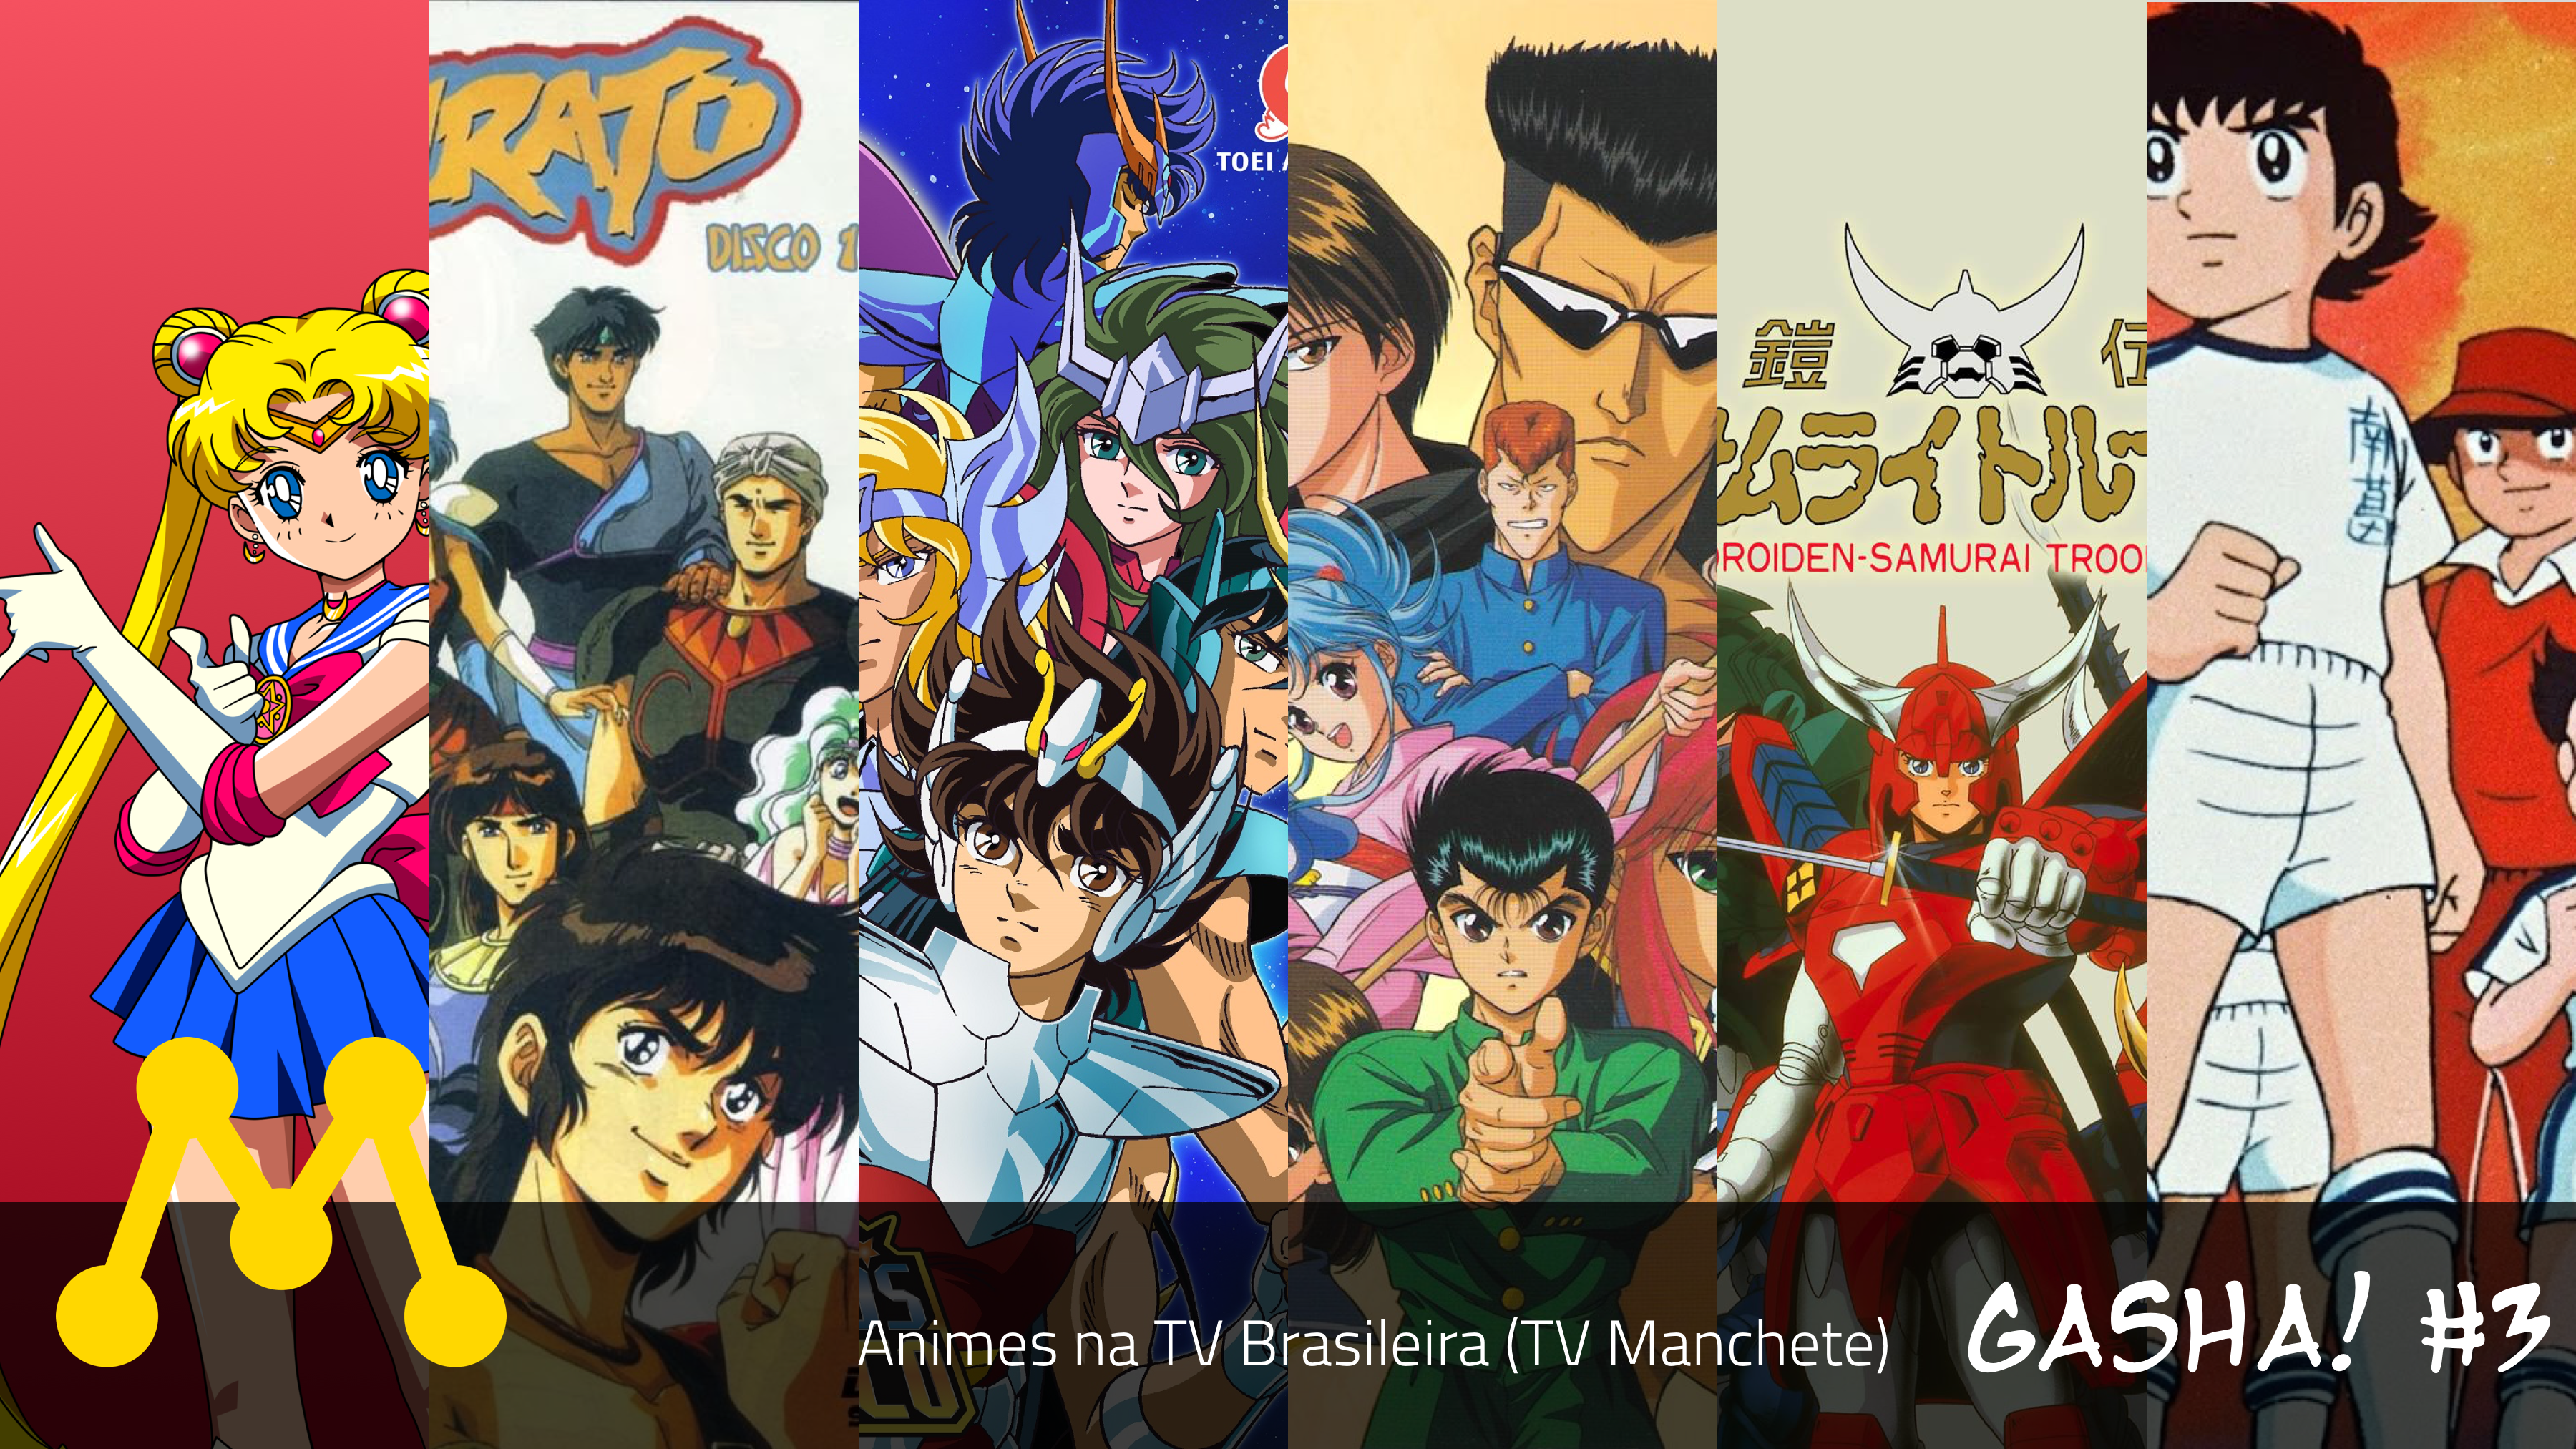 Gasha! #3 - Animes na TV Brasileira (TV Manchete) - Gasha! Podcast